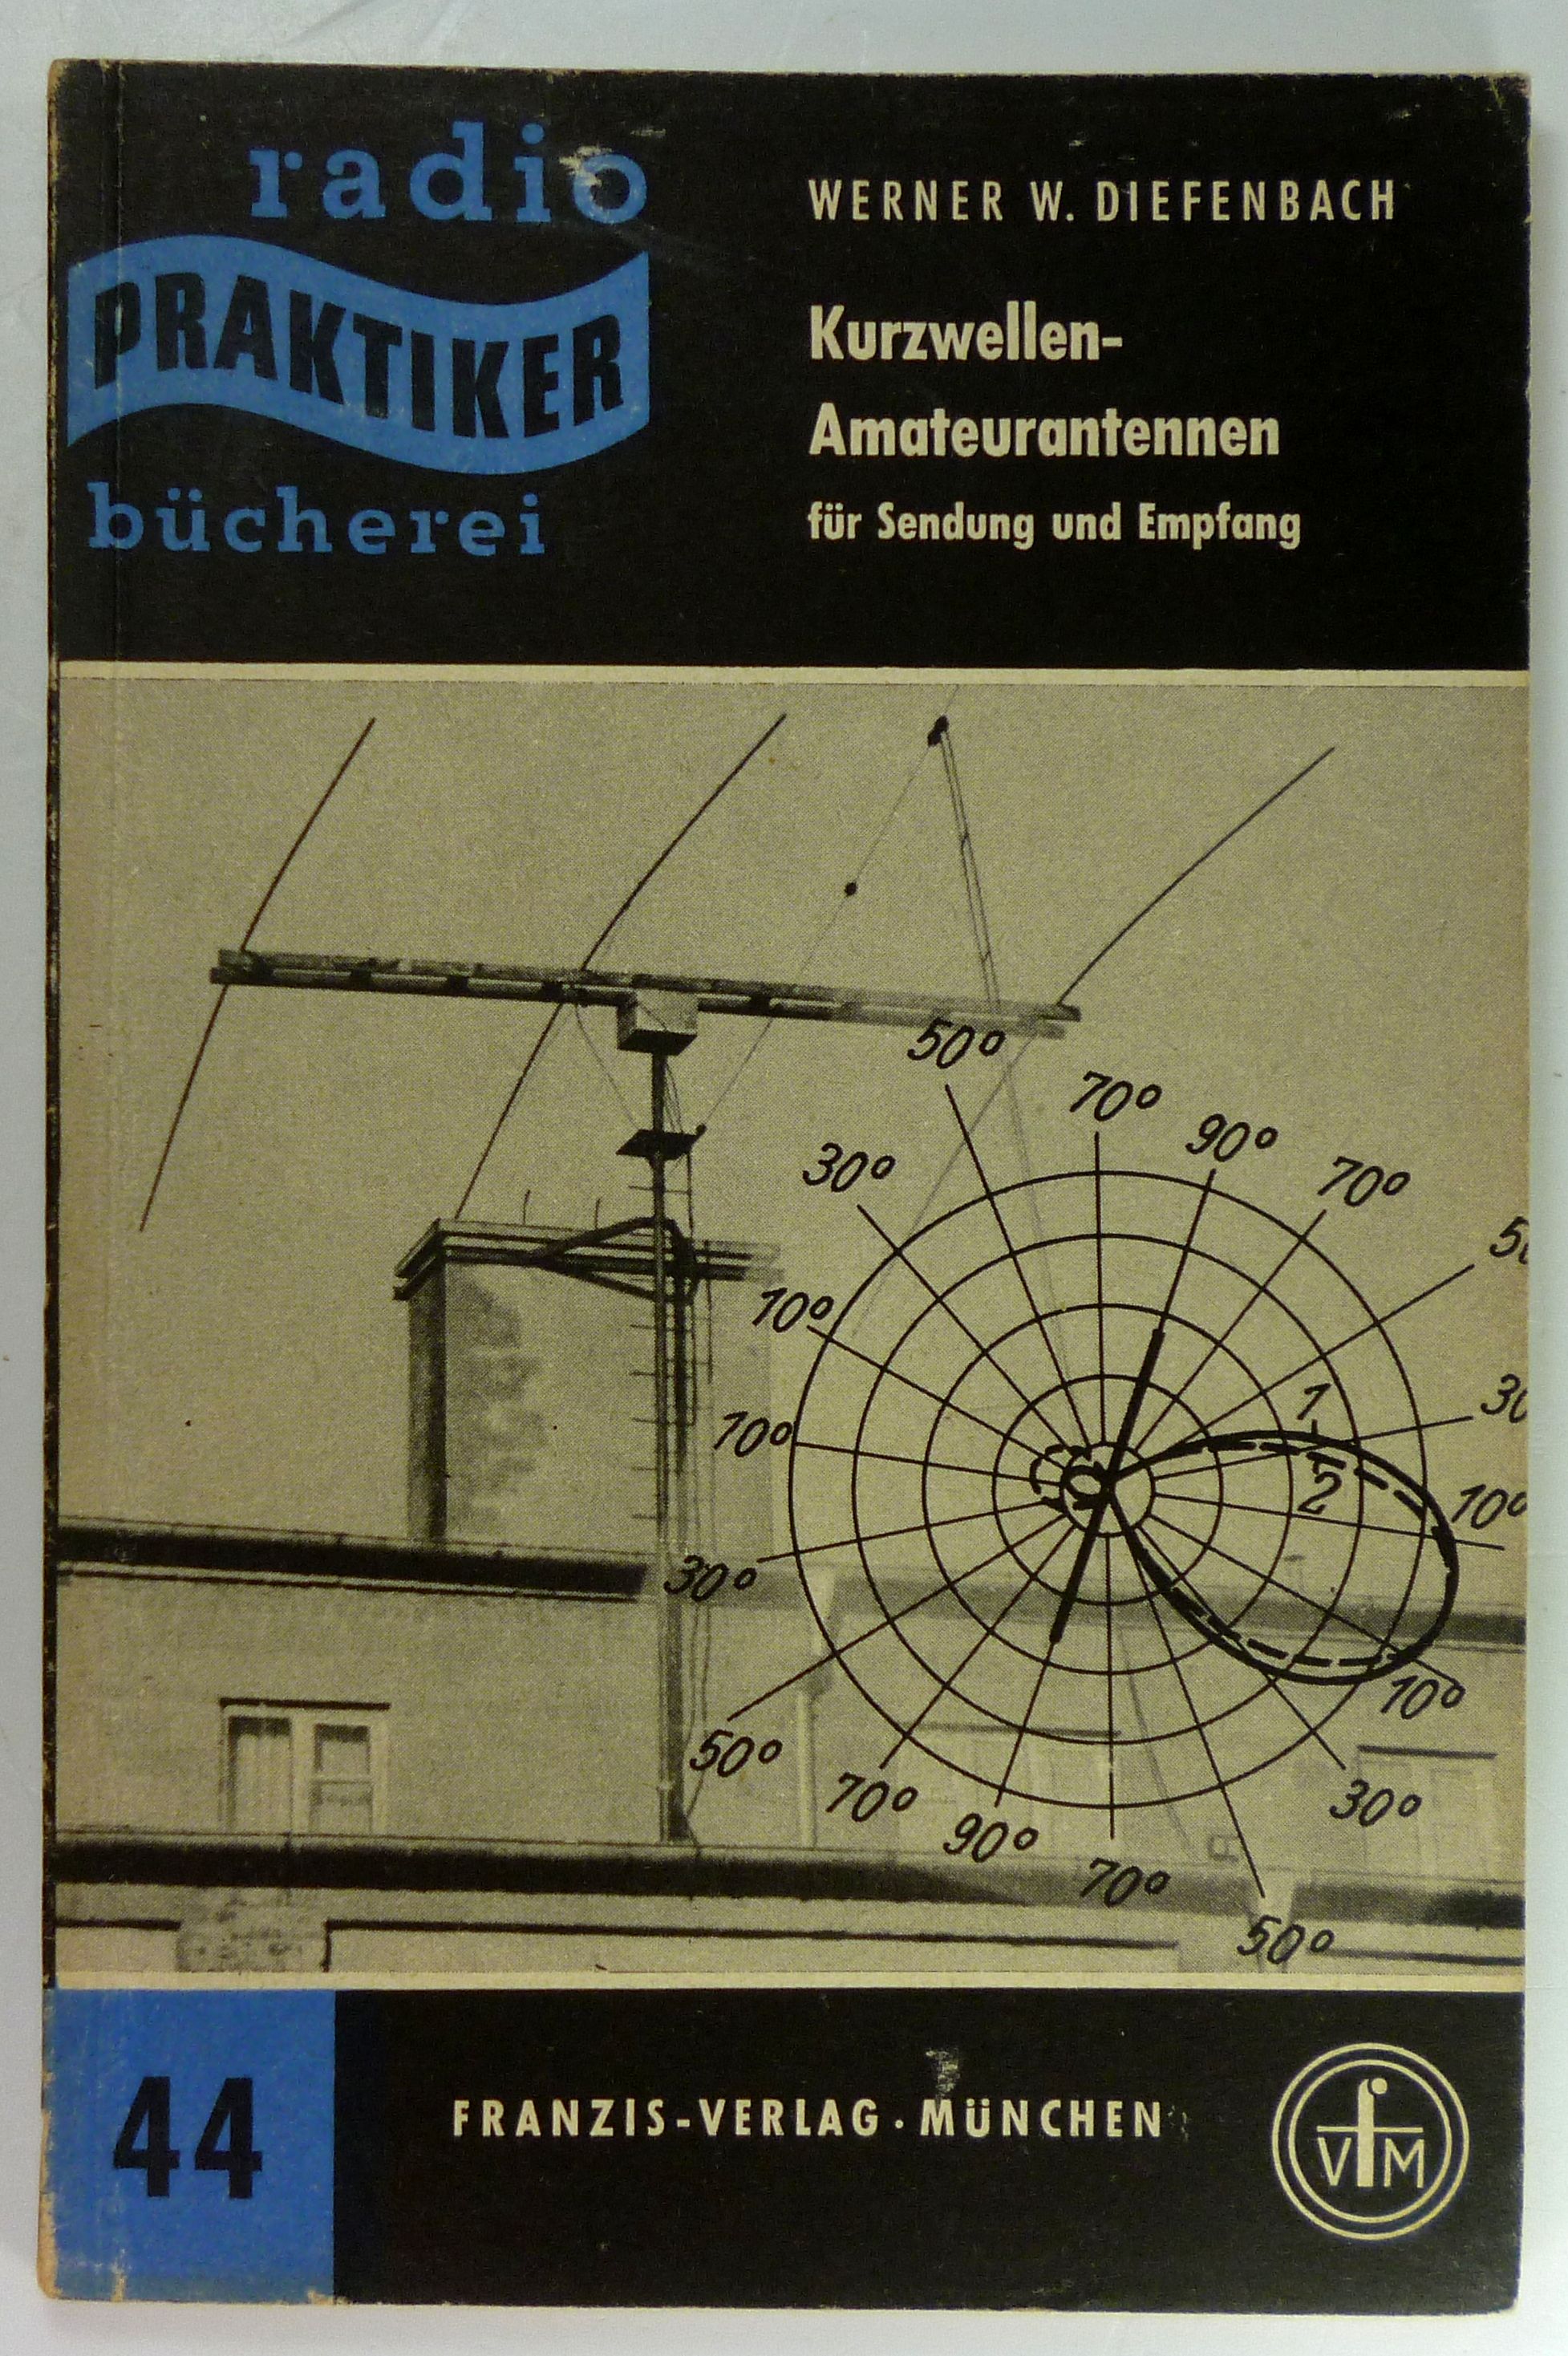 Kurzwellen-Amateurantennen für Sendung und Empfang. (Radio-Praktiker-Bücherei, 44). - Diefenbach, Werner W.